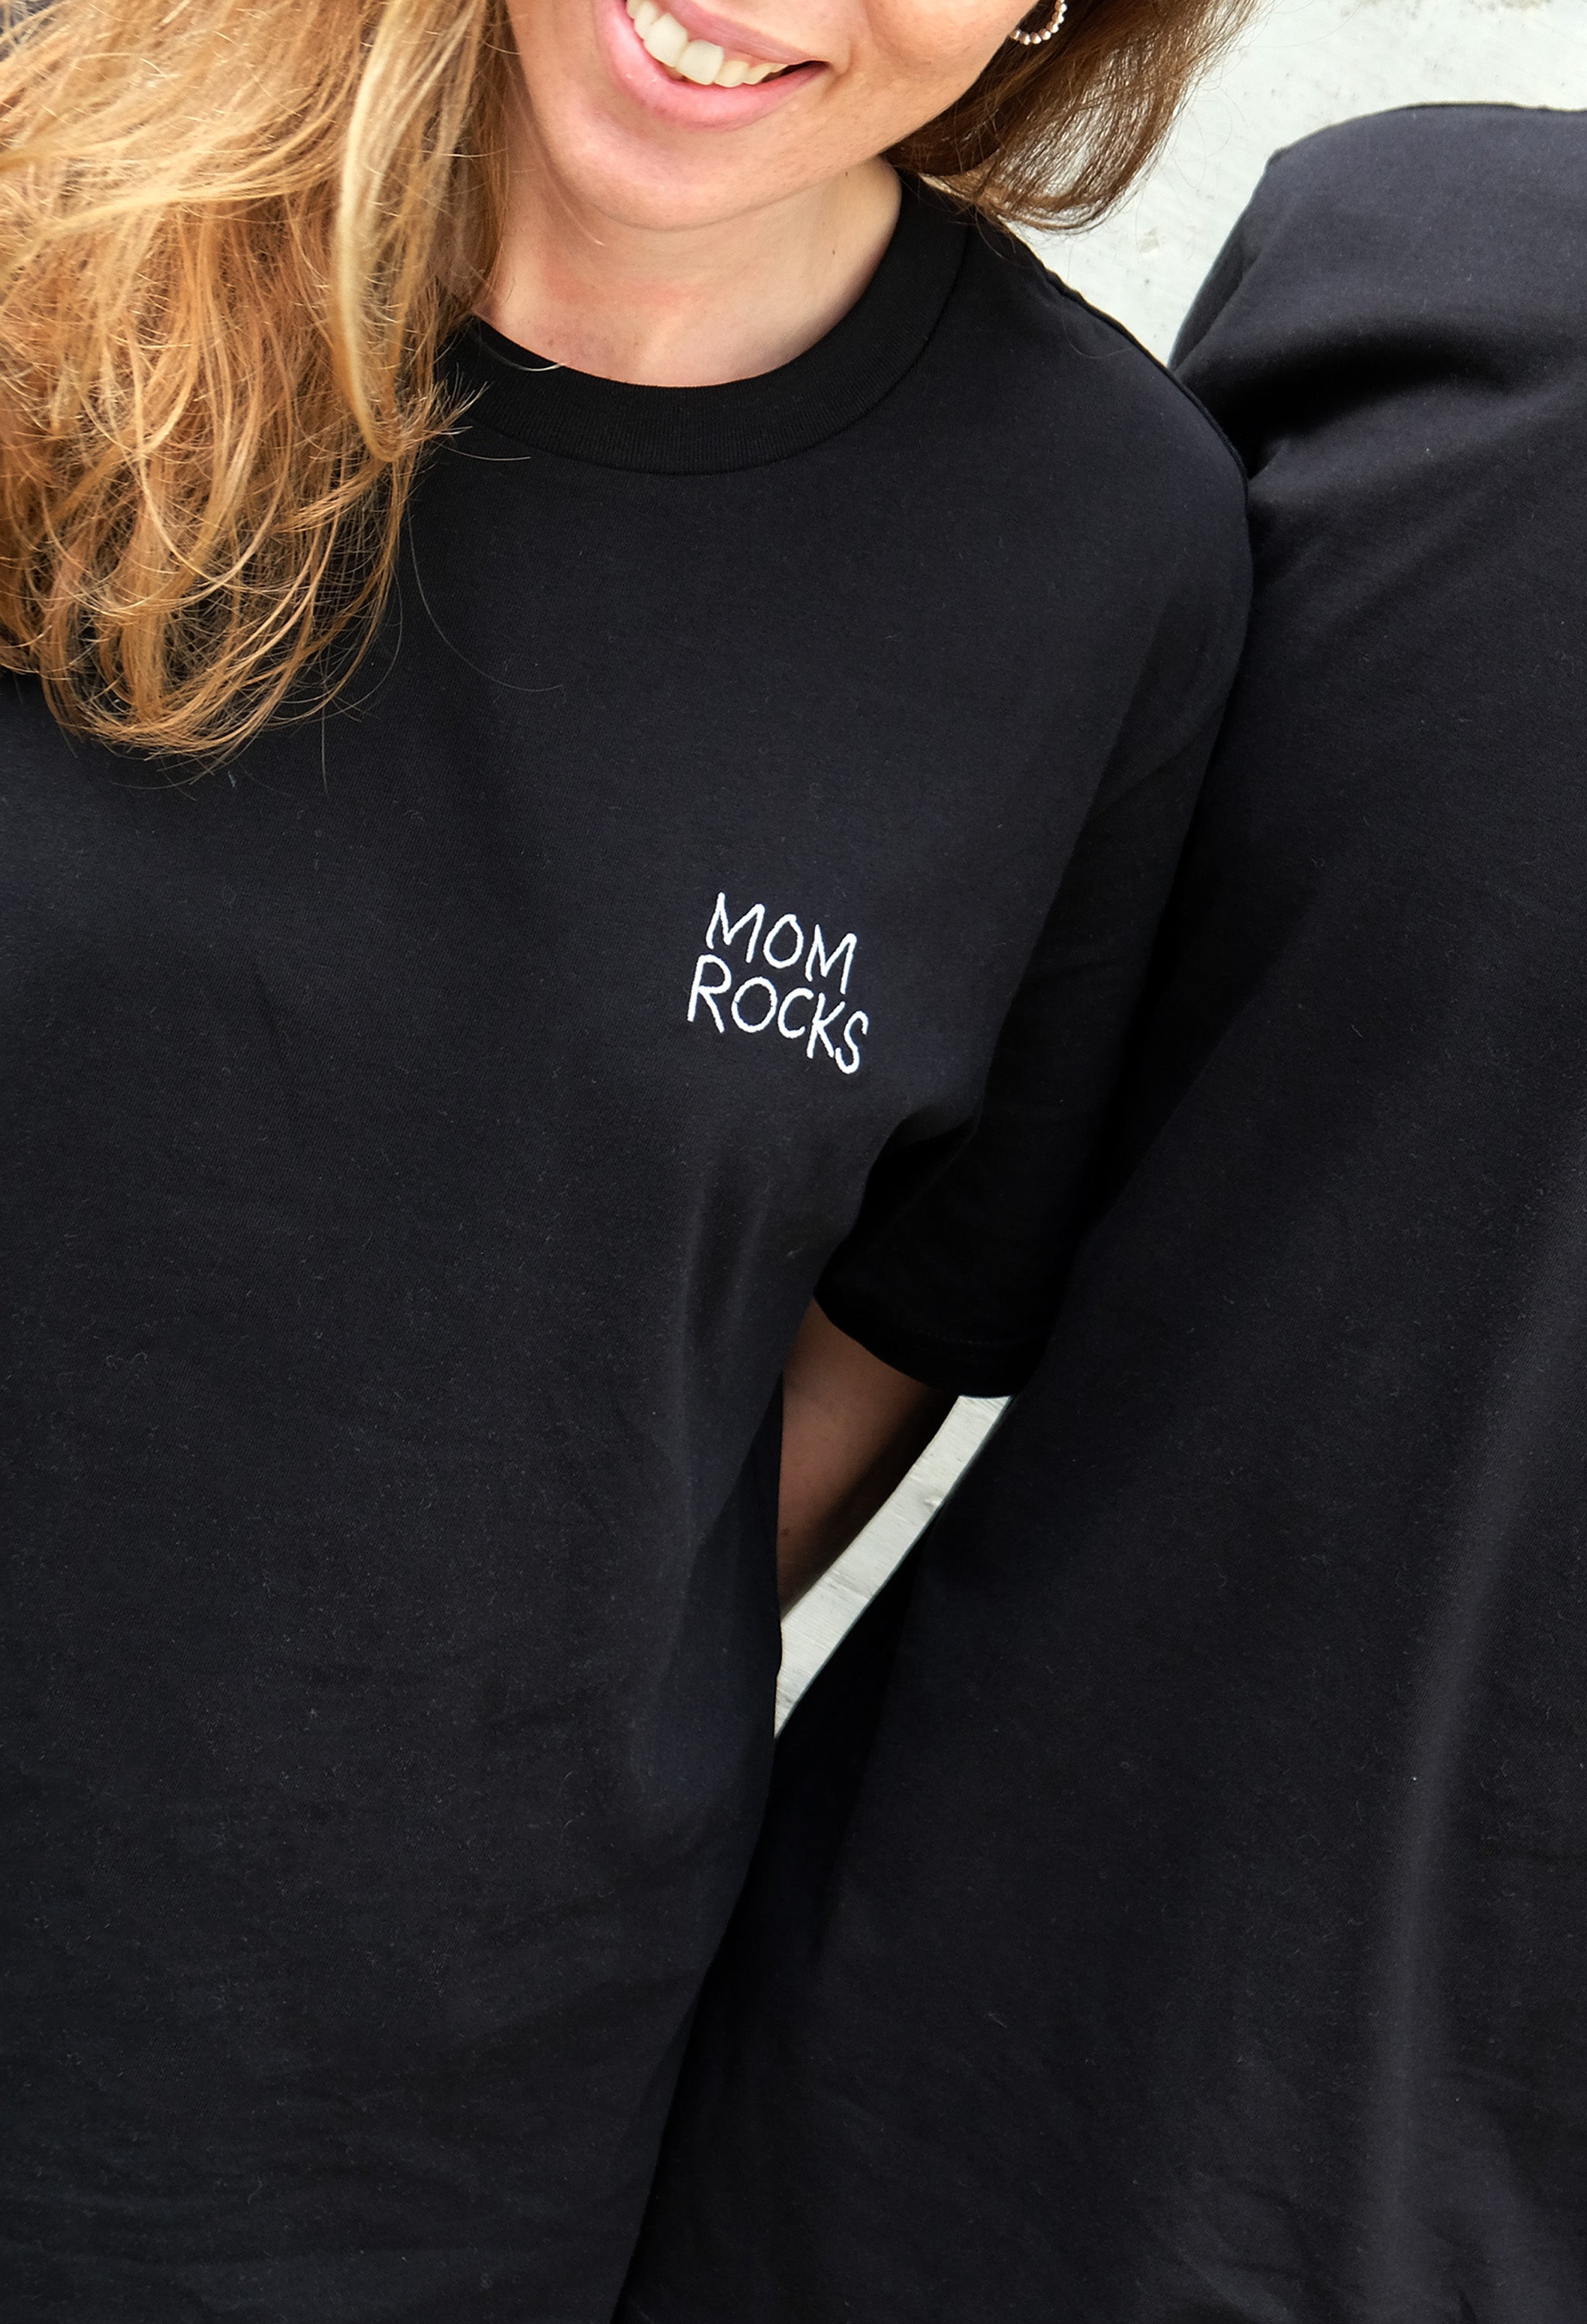 Mom Rocks T-shirt